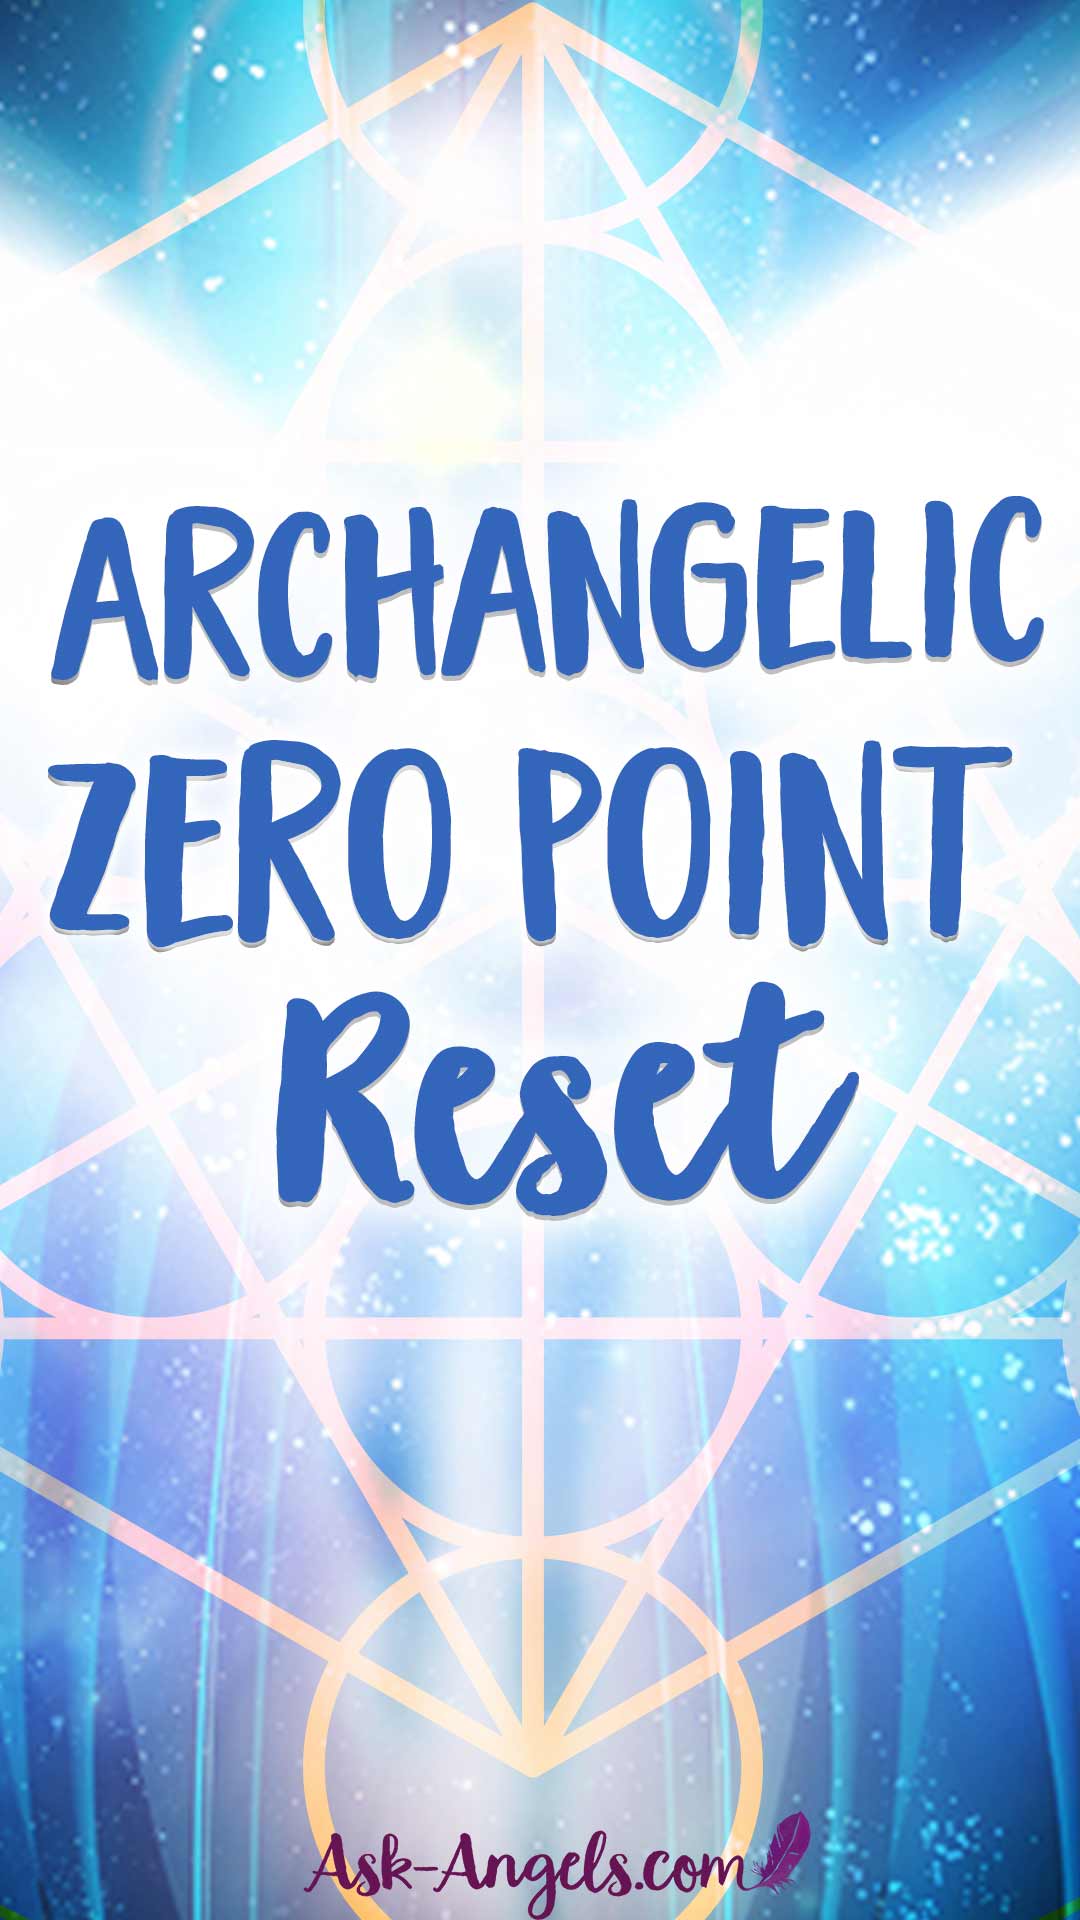 Archangelic Zero Point Reset